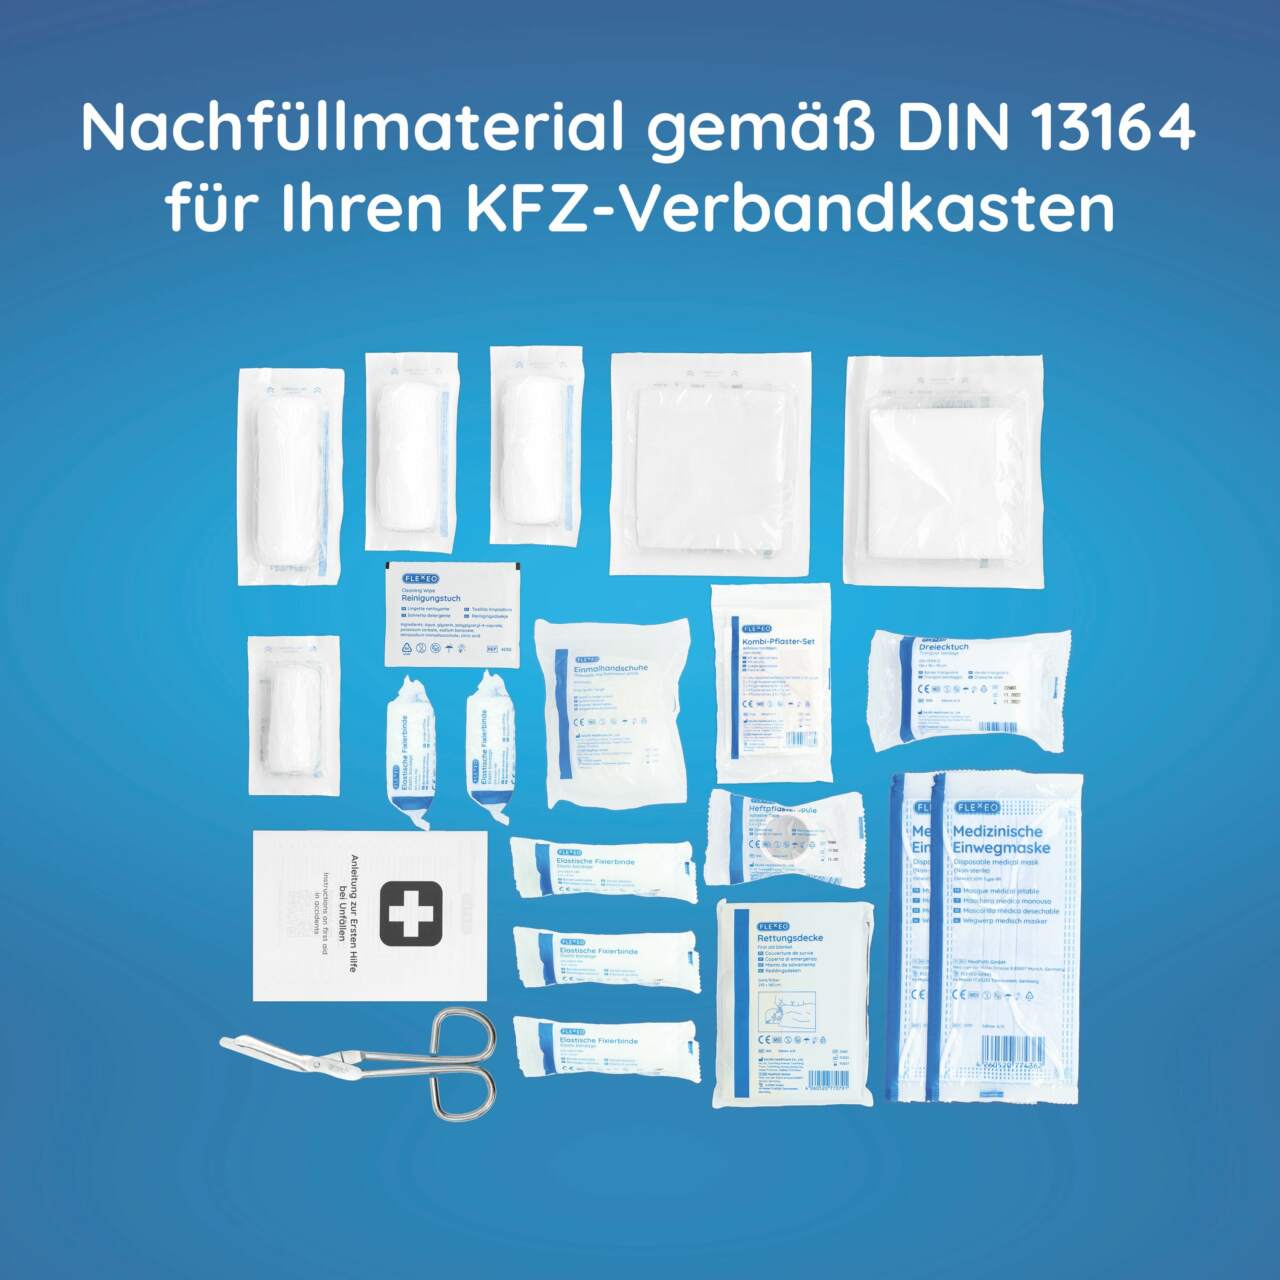 FLEXEO KFZ-Verbandtasche DIN 13164:2022, (1 St), Erste-Hilfe-Set für Autos,  PKWs